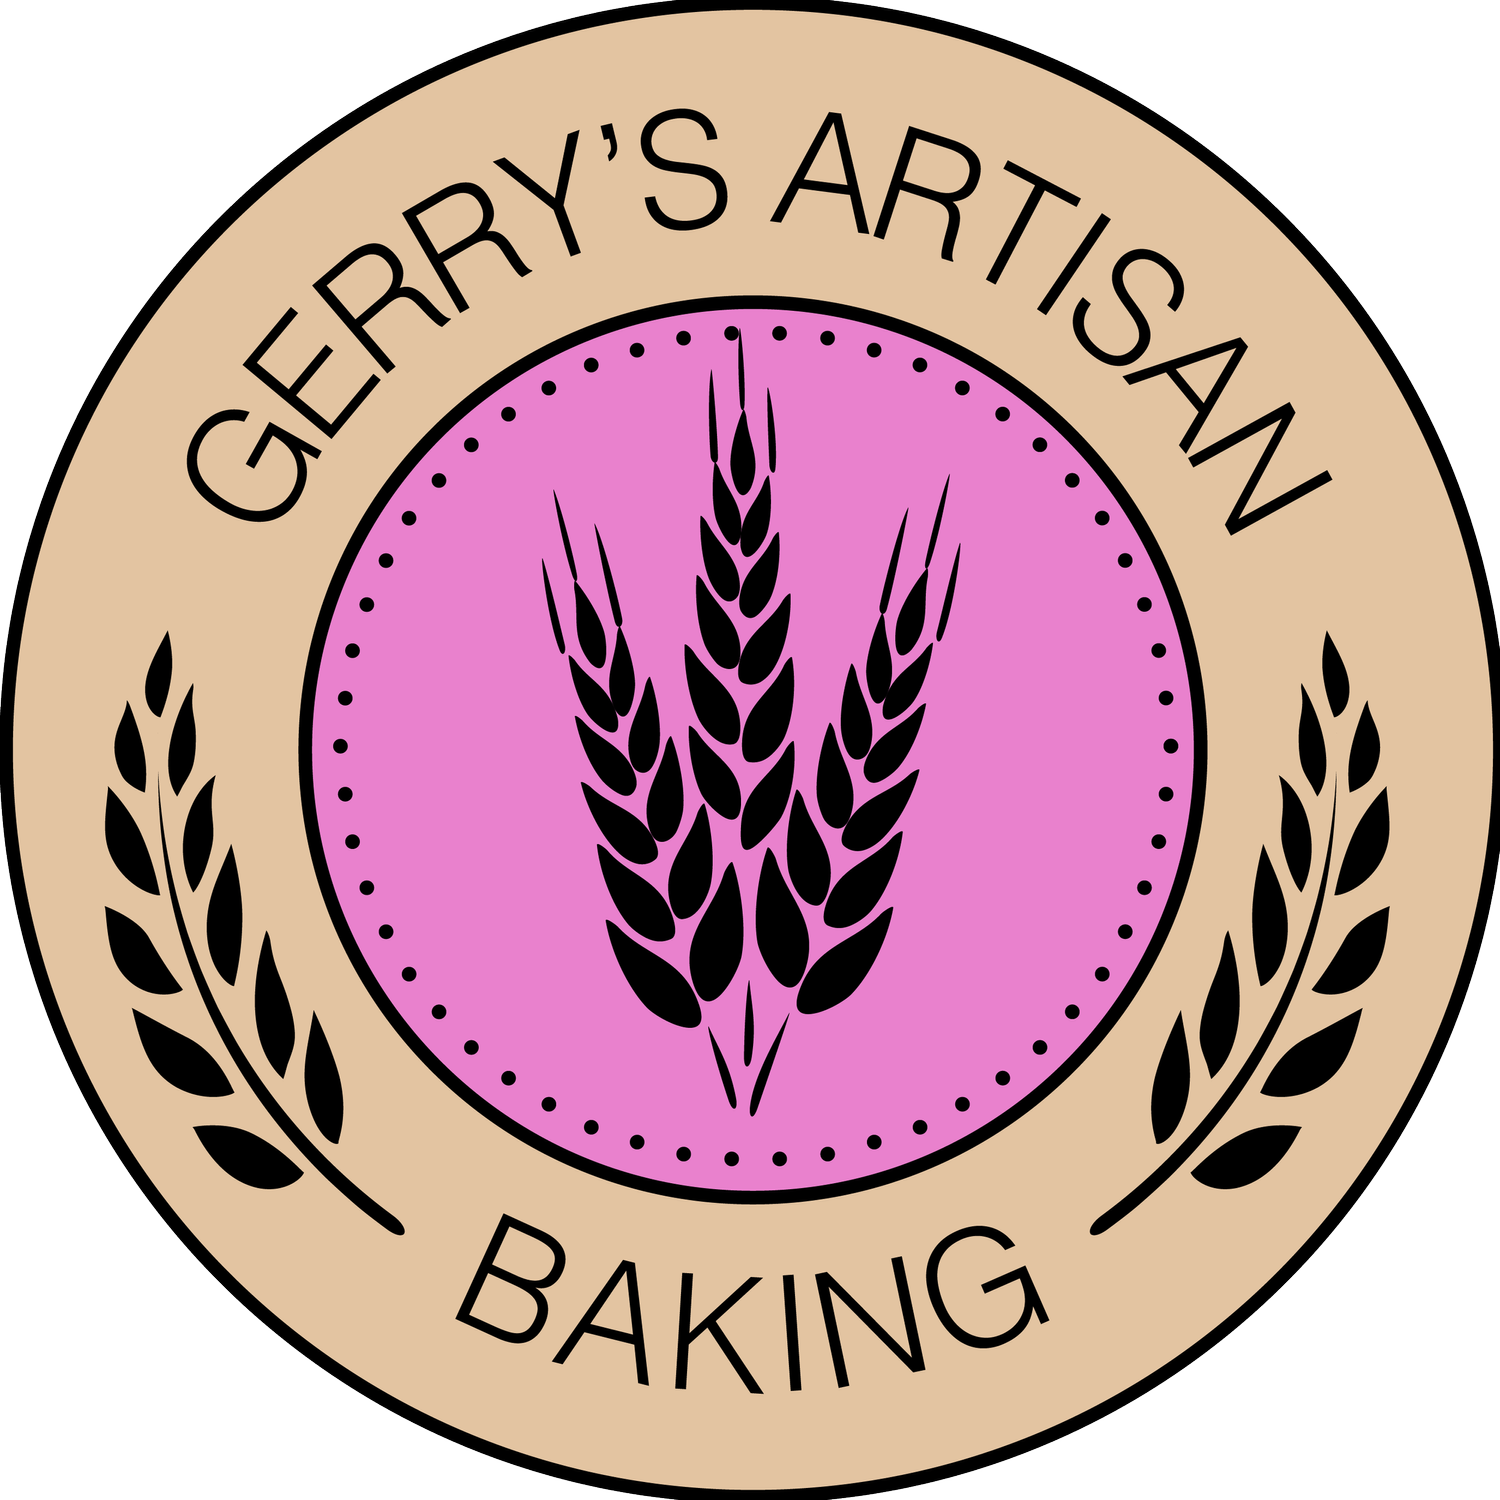 Gerrys Artisan Baking